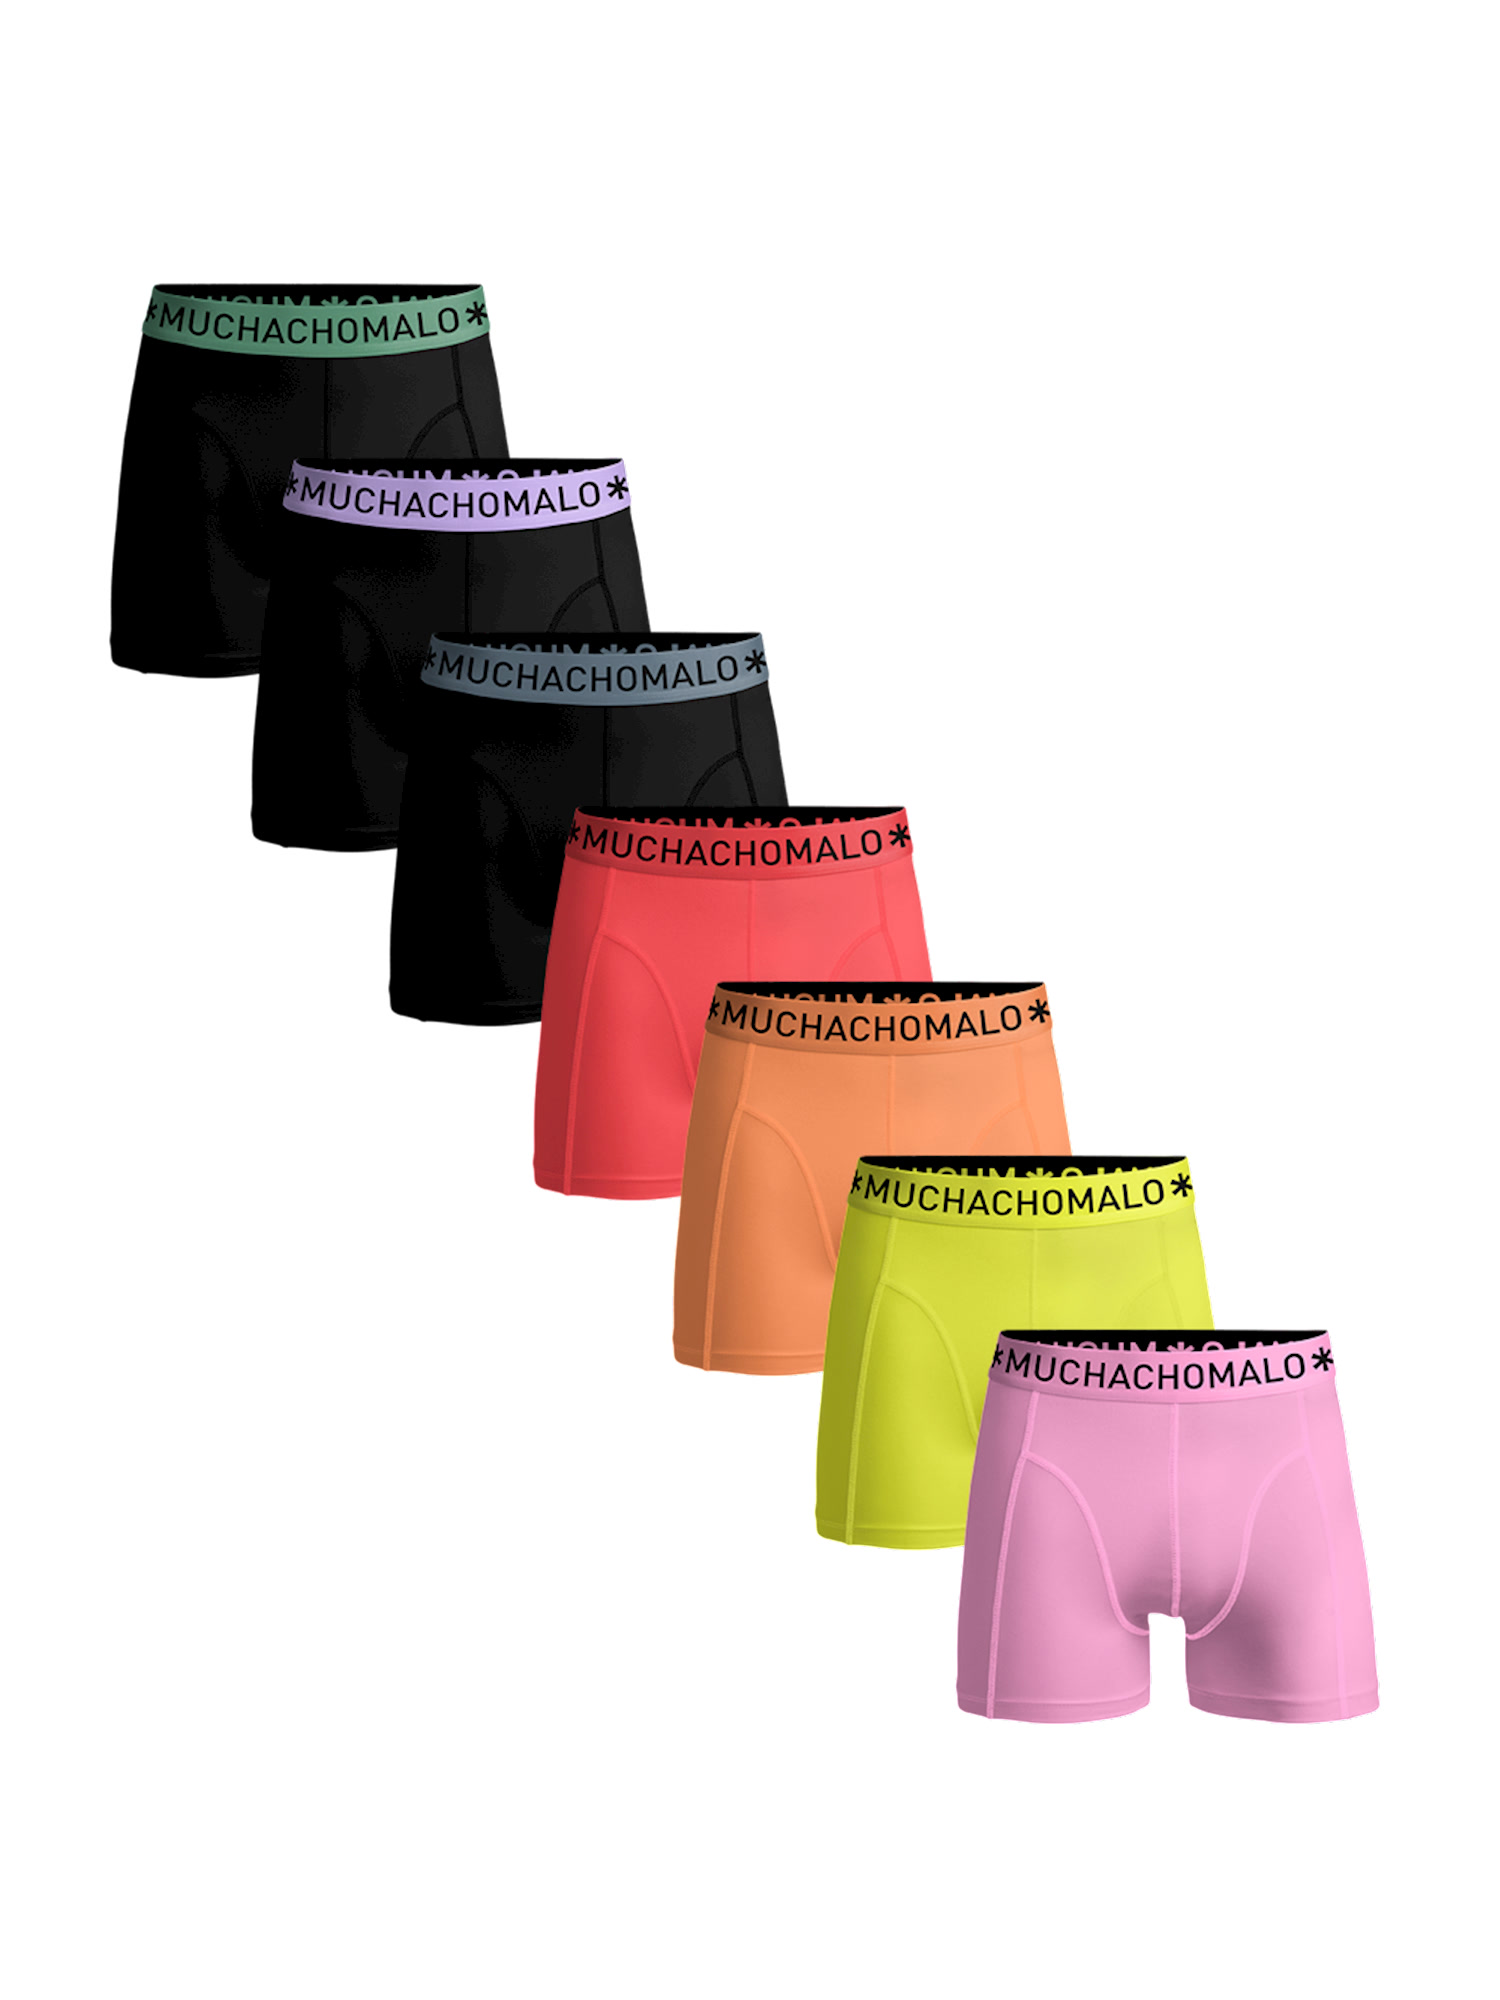 Боксеры Muchachomalo 7er-Set: Boxershorts, цвет Black/Black/Black/Pink/Orange/Yellow/Pink